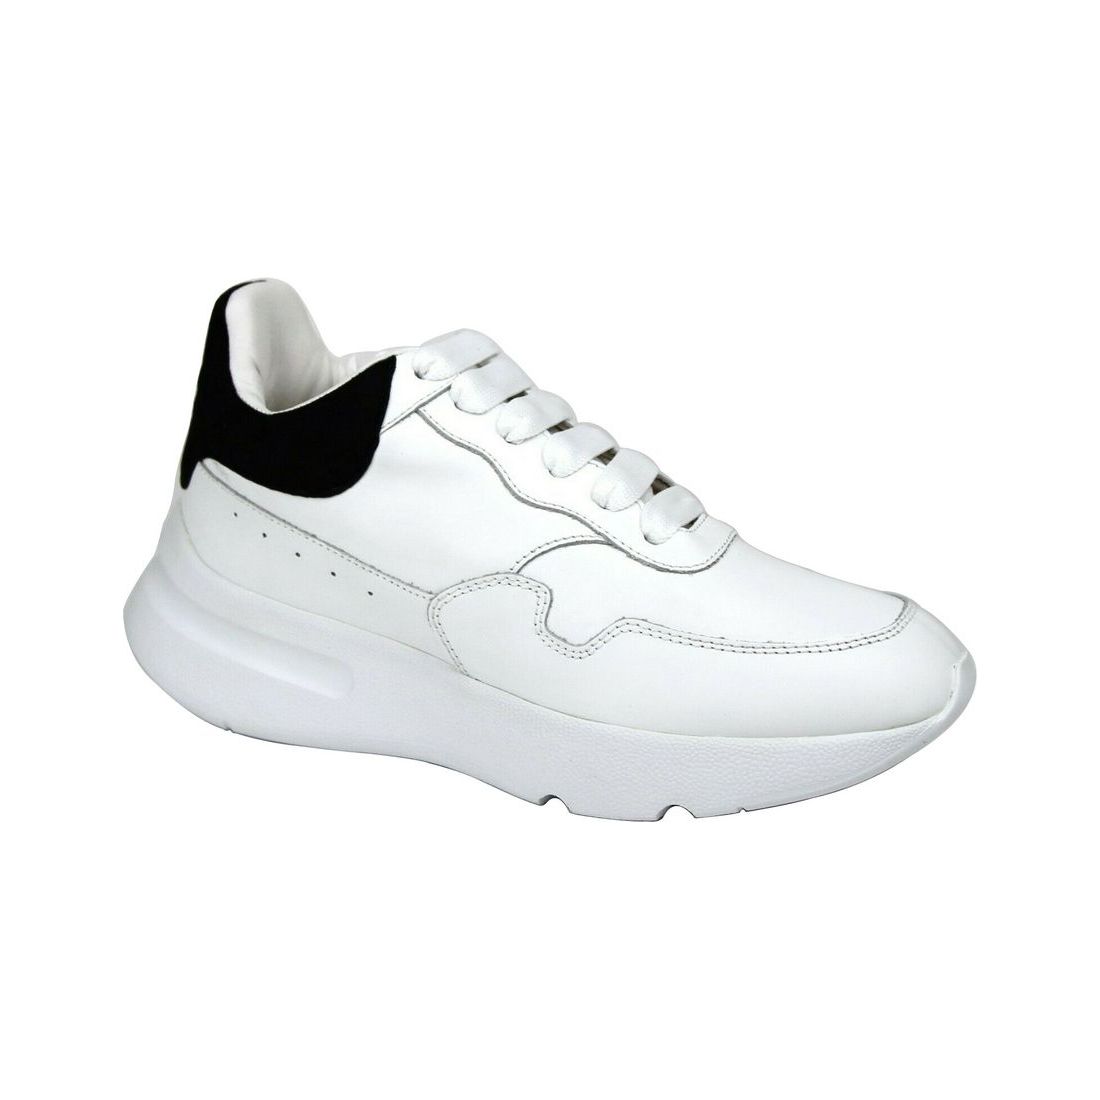 Alexander McQueen Alexander McQueen Women White Leather Suede Sneaker alexander-mcqueen-women-white-leather-suede-sneaker 508291-9061-39__6-0f7418e9-e9e.jpg